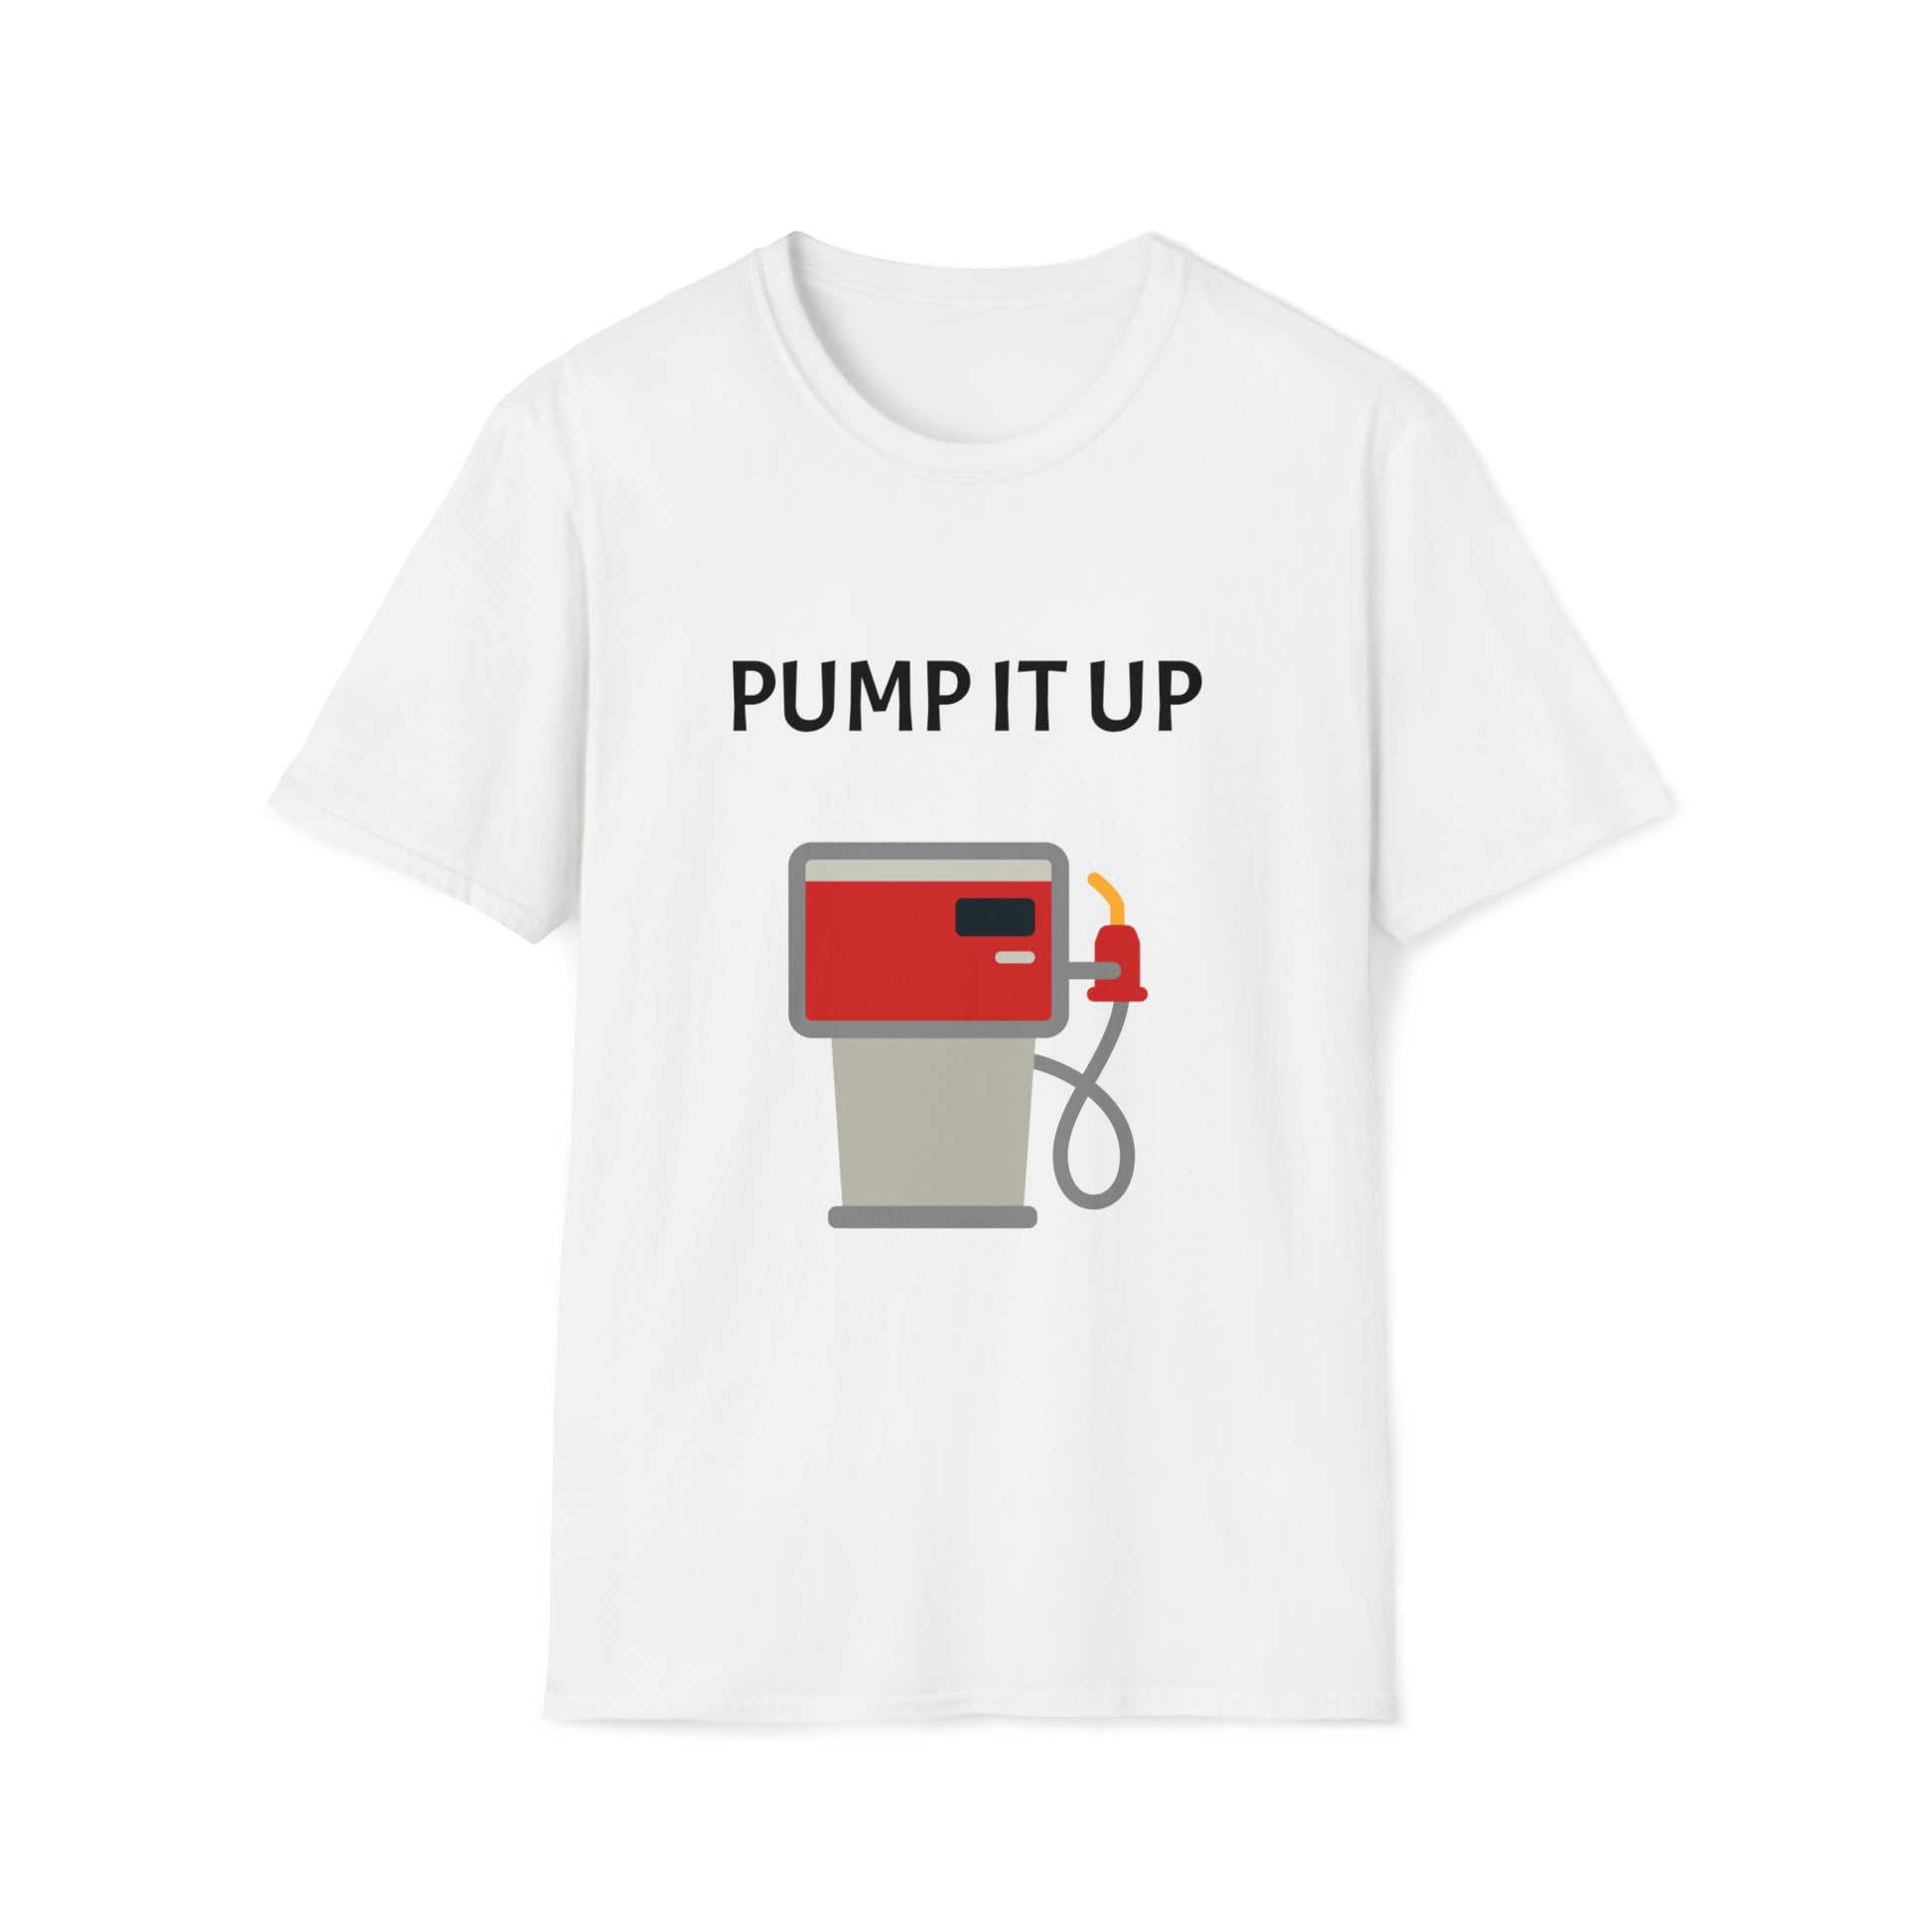 Pump it up tshirt